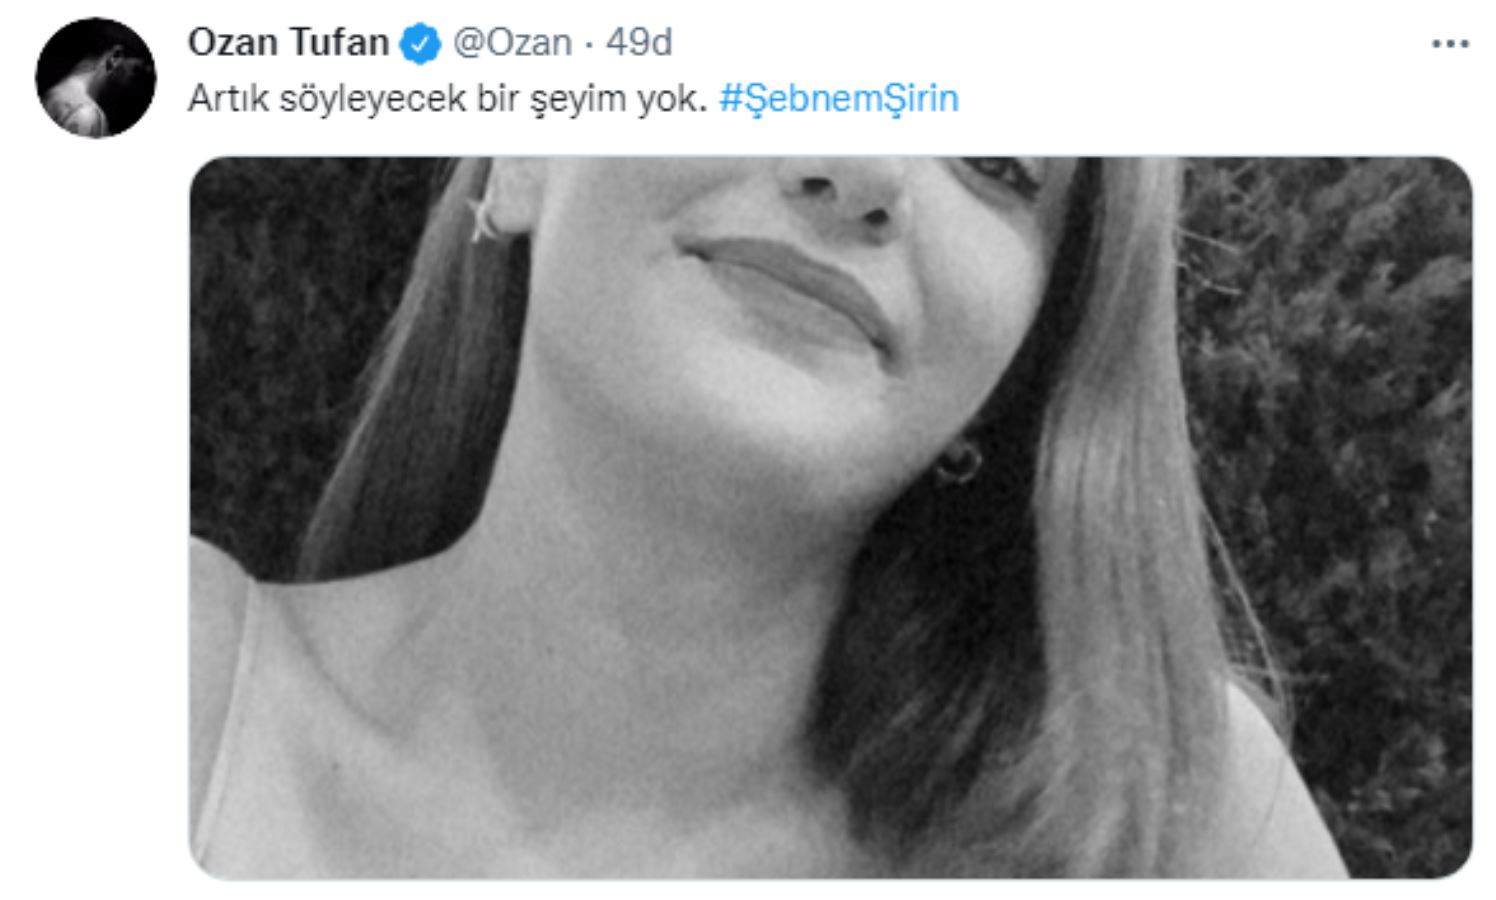 Spor camiası Şebnem Şirin cinayetine sosyal medyadan tepki gösterdi